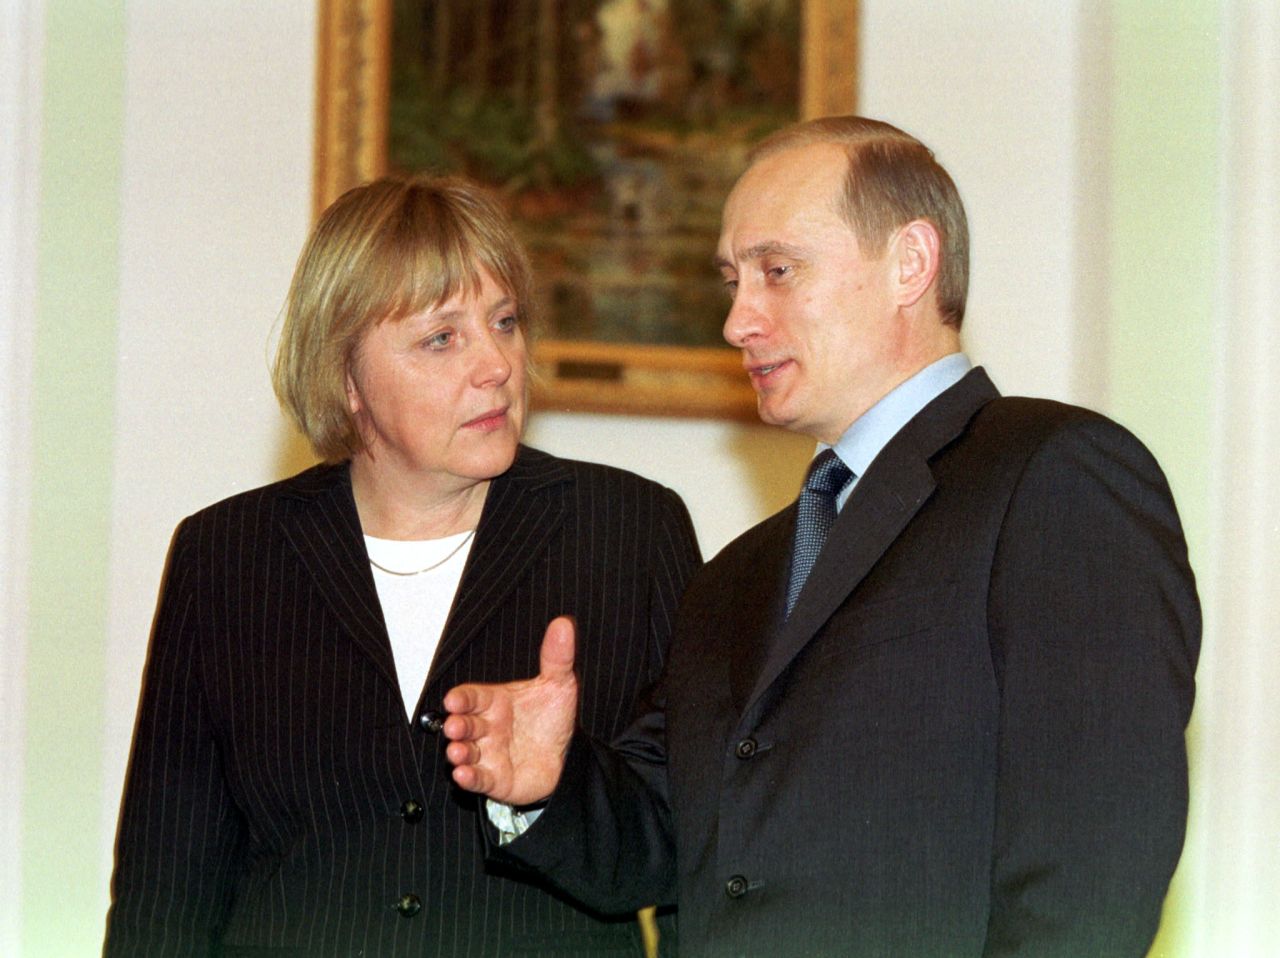 Merkel meets Russian President Vladimir Putin in 2002, one of many meetings they would have over the years. Merkel speaks Russian fluently, while Putin speaks German.